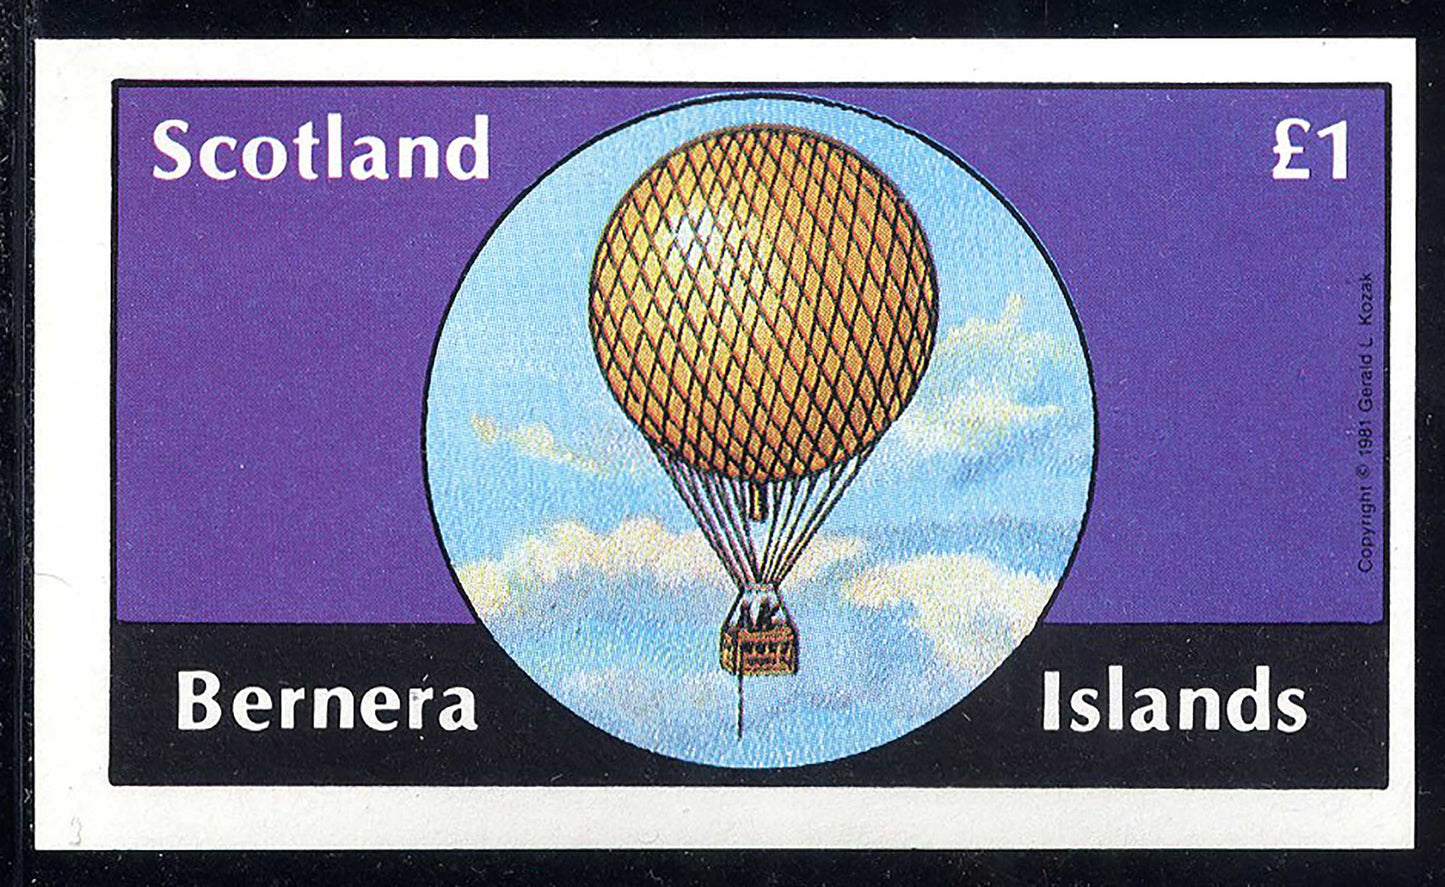 Bernera Balloons, Airships, And Airplanes £1